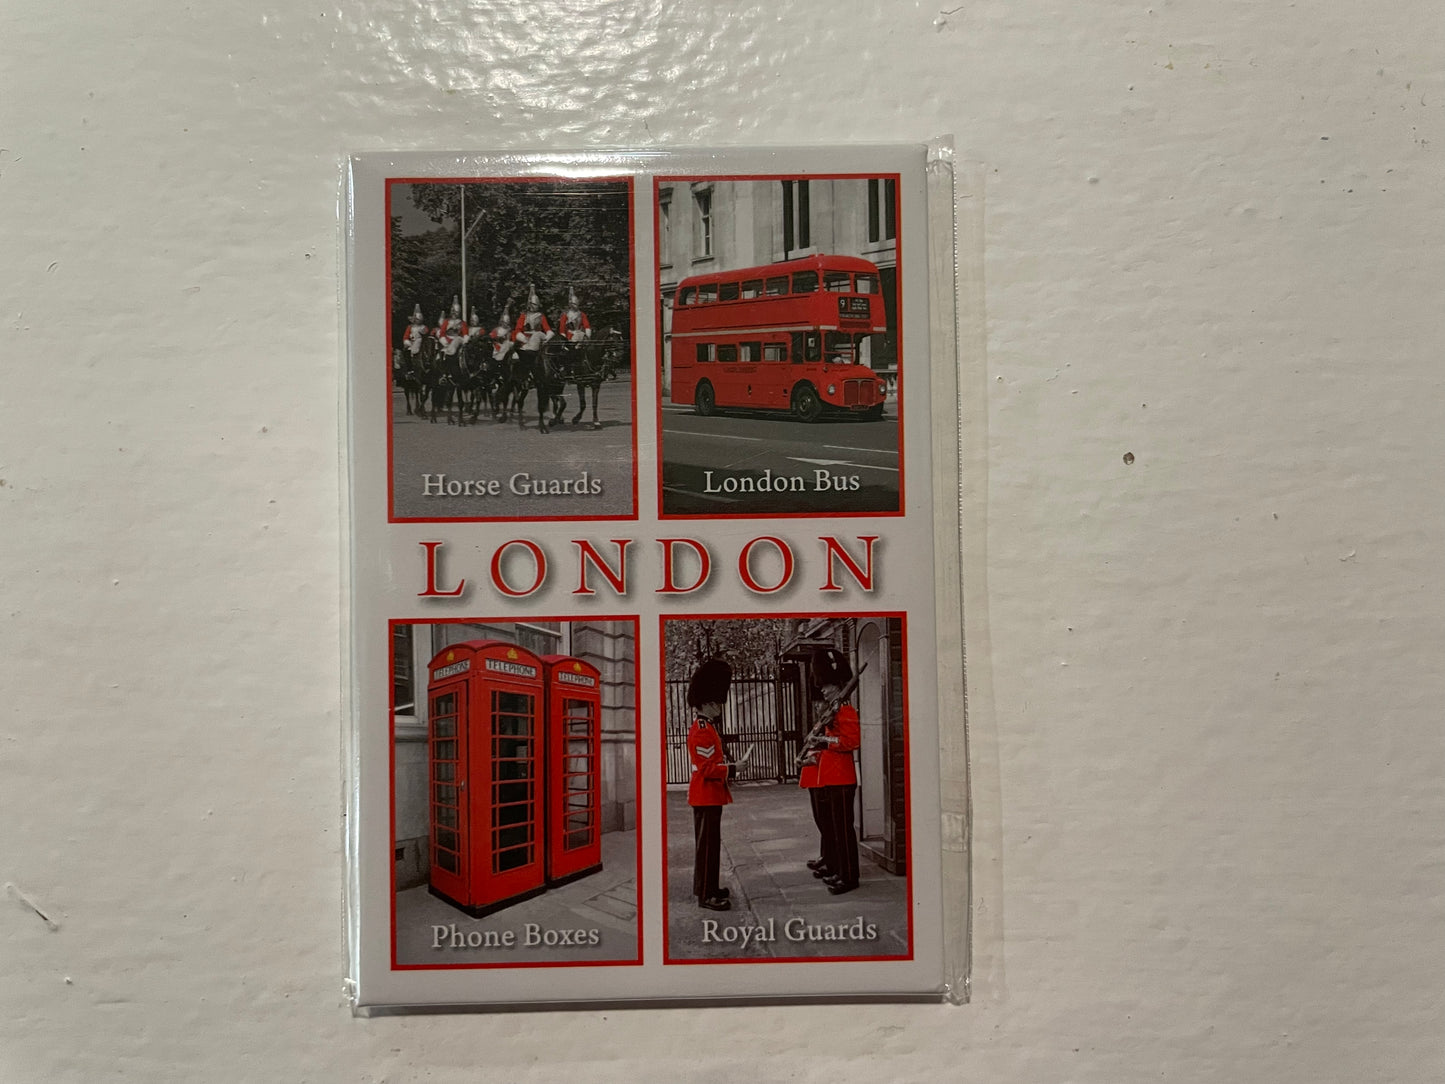 London souvenir magnets